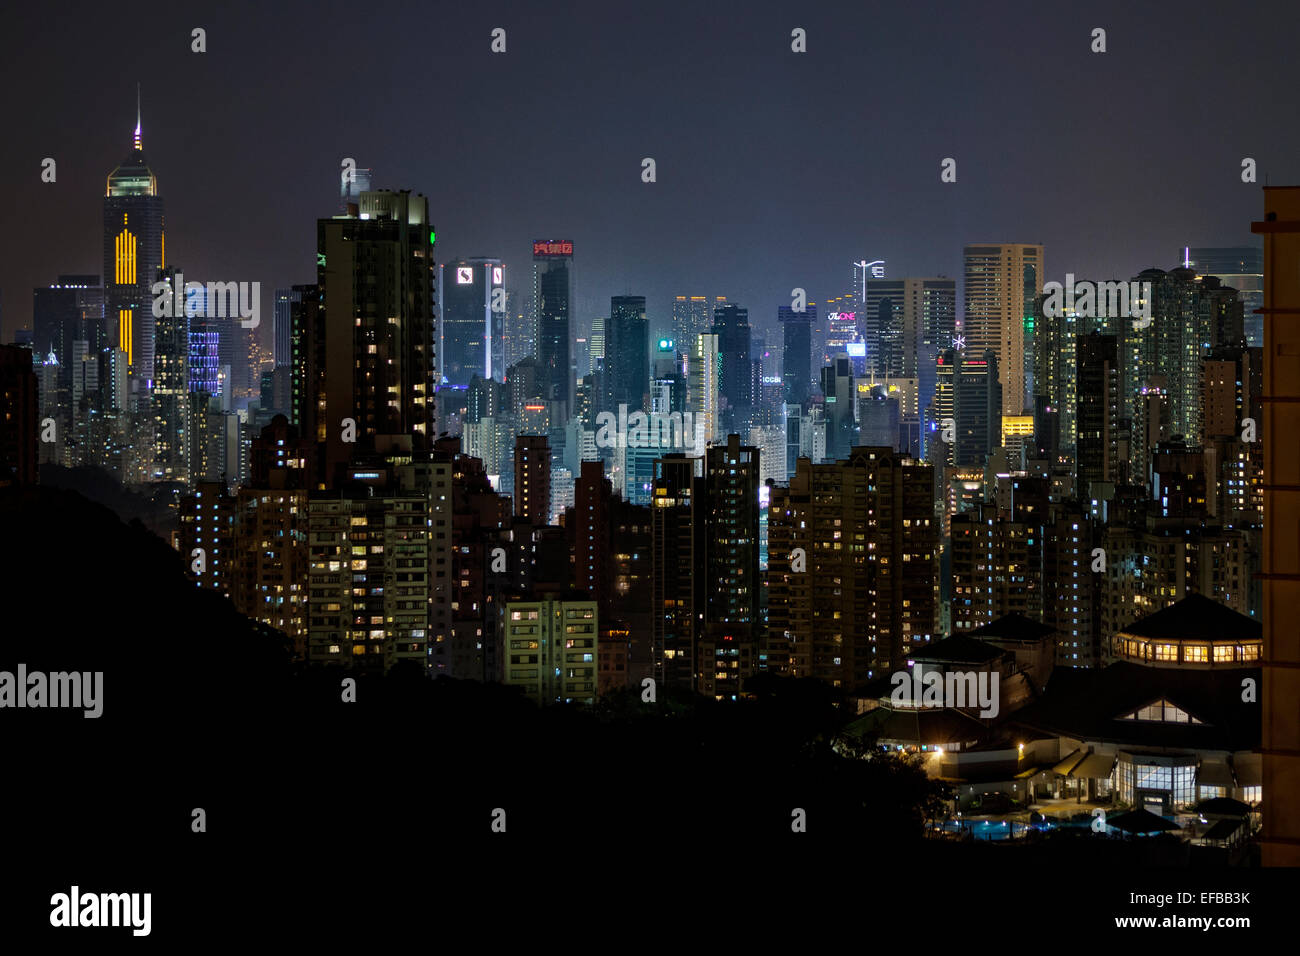 Les immeubles de grande hauteur dans le centre-ville de l'île de Hong Kong at night Banque D'Images